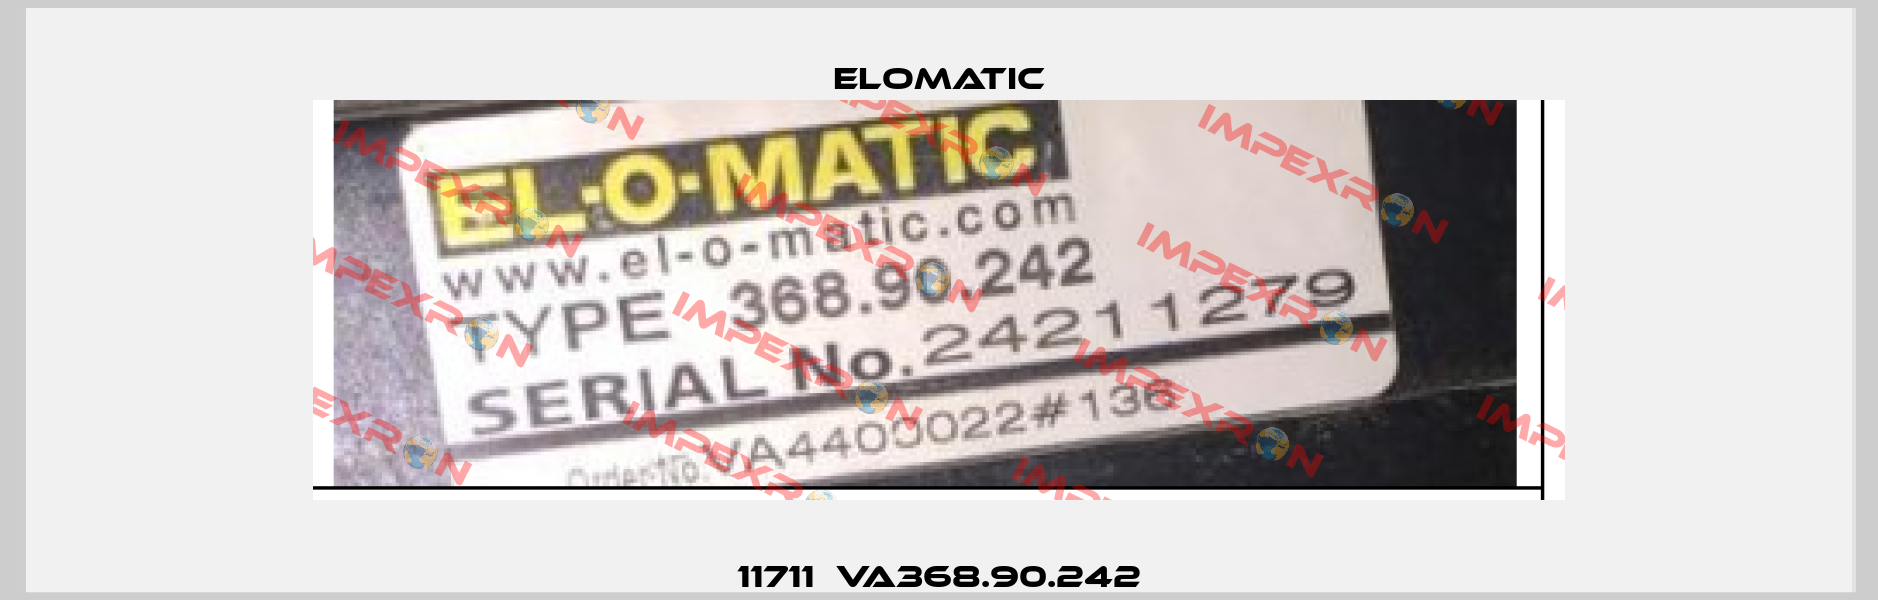 11711  VA368.90.242 Elomatic